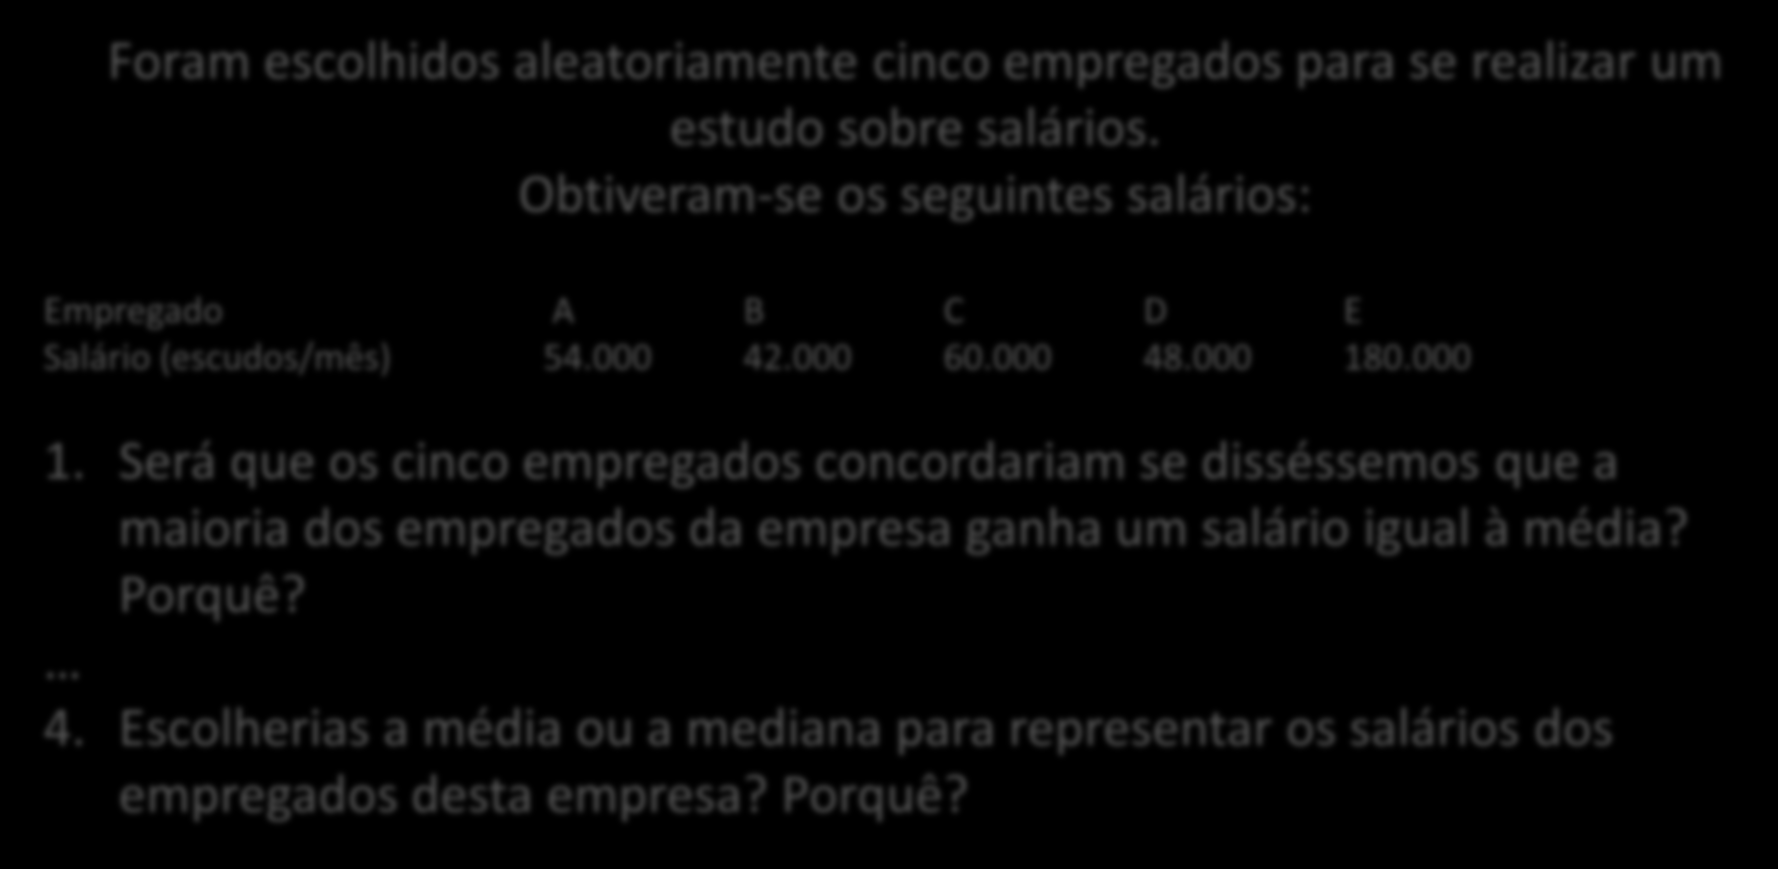 O problema dos salários de Carvalho e Solomon Foram escolhidos aleatoriamente cinco empregados para se realizar um estudo sobre salários.